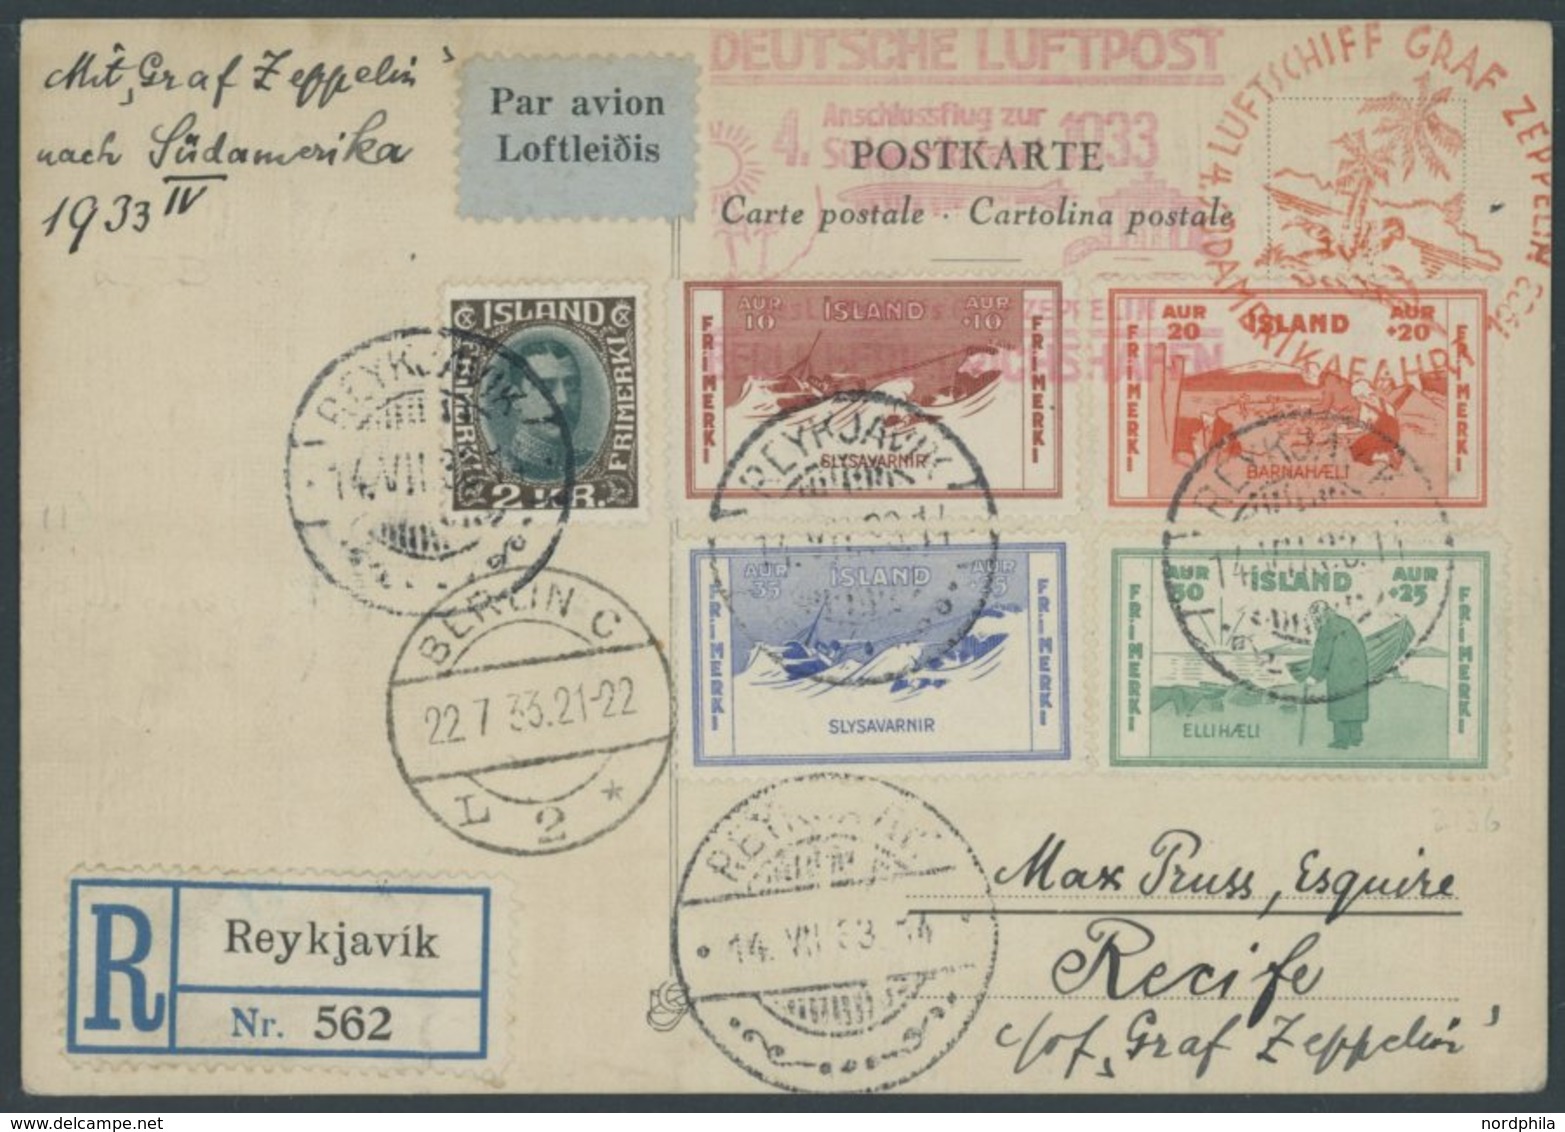 Island: 1933, 4. Südamerikafahrt, Anschlußflug Ab Berlin, Frankiert U.a. Mit Mi.Nr. 168-71, Einschreibkarte, Pracht -> A - Luft- Und Zeppelinpost